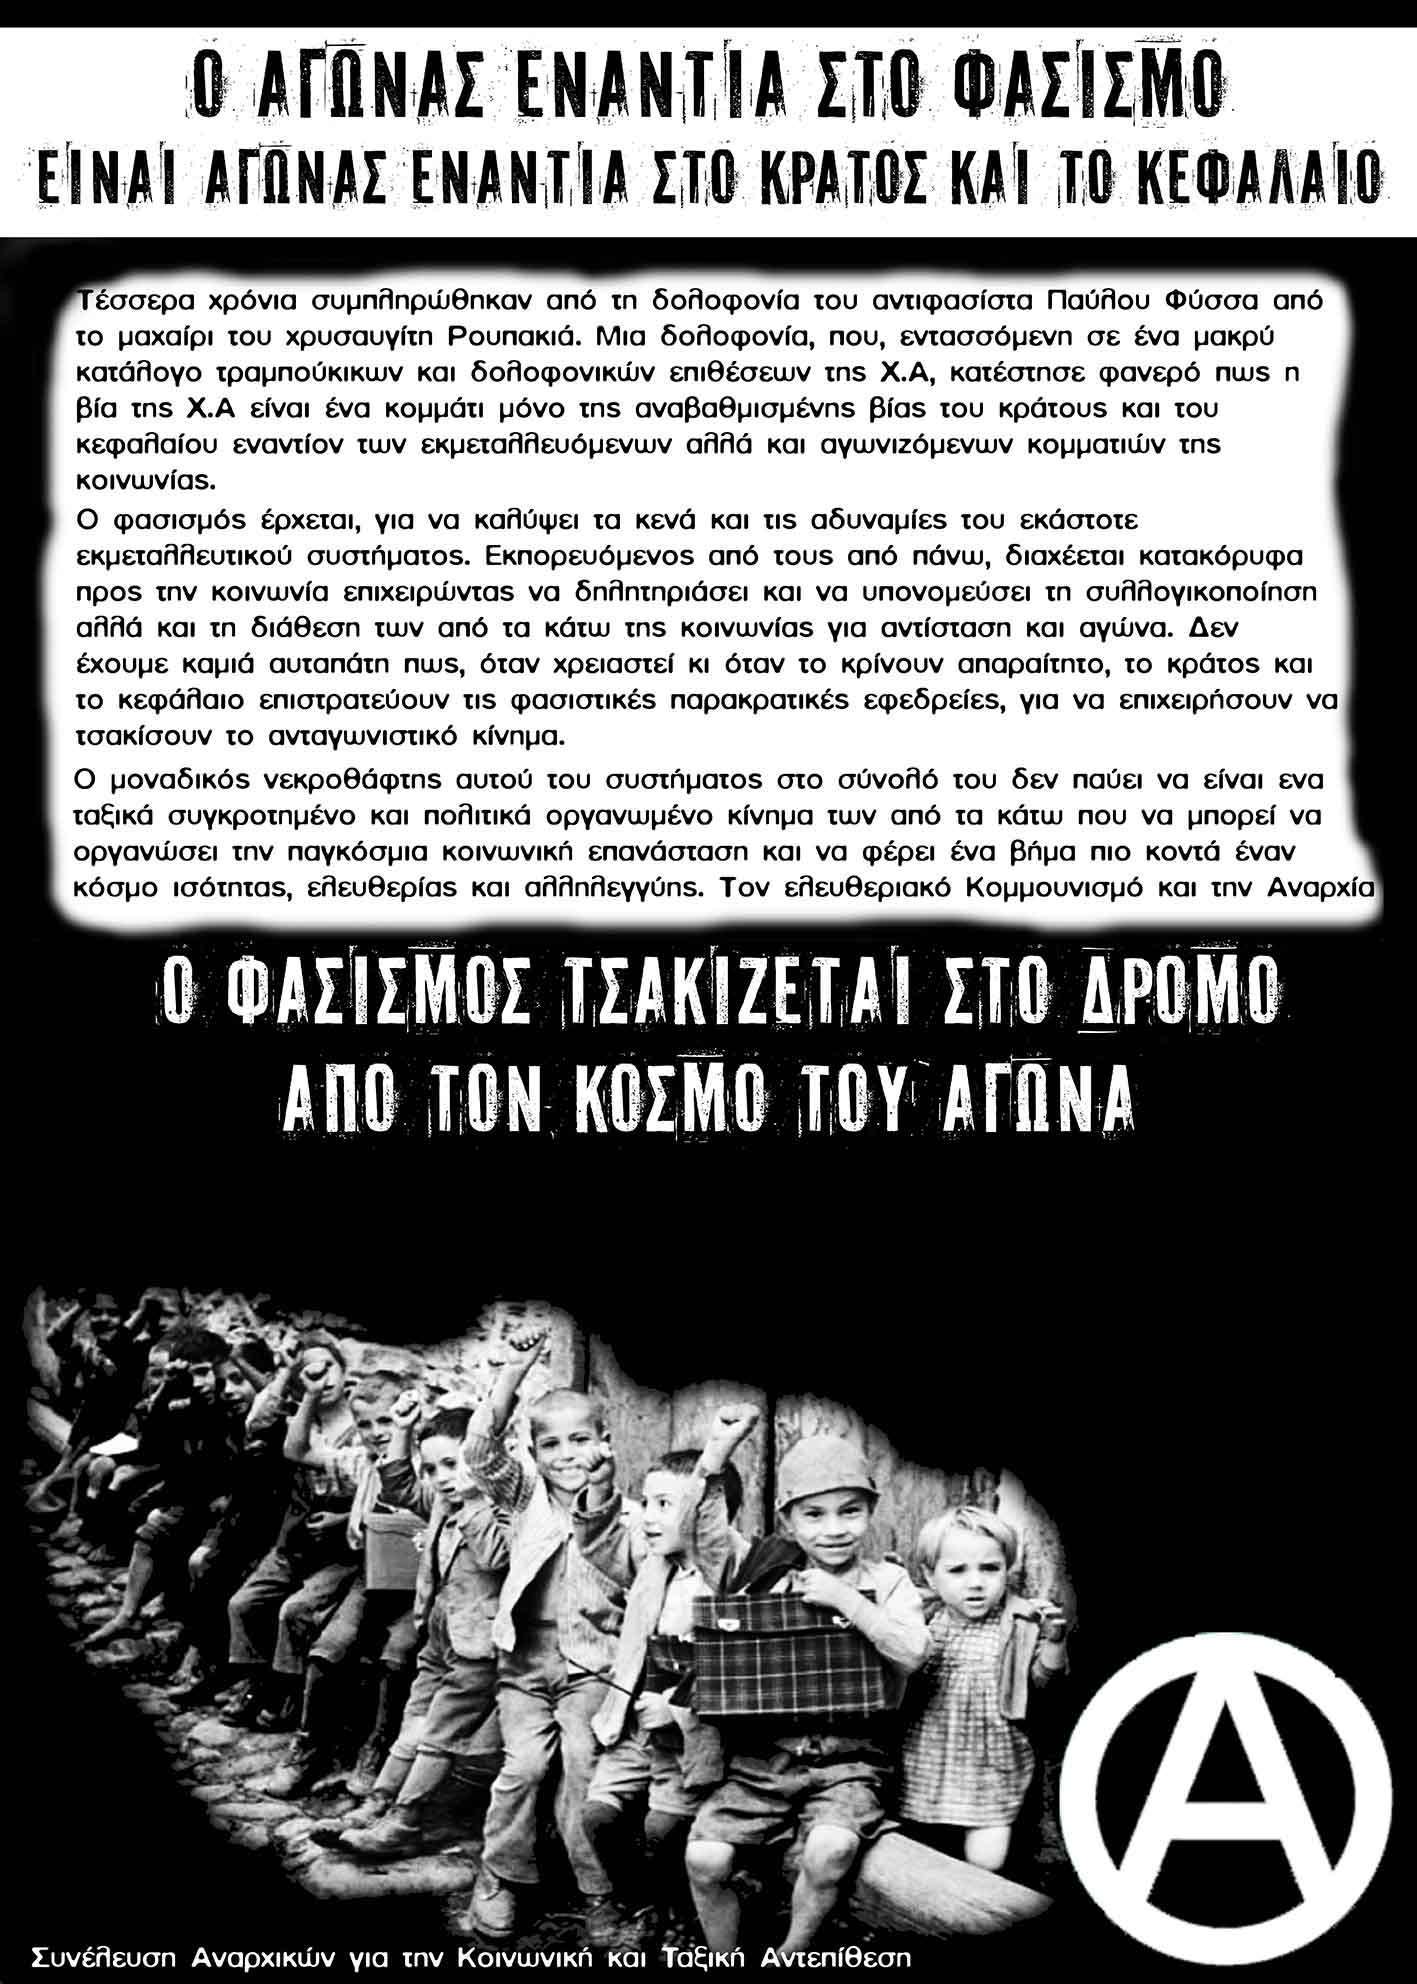 ΣΑΚΤΑ, Πάτρα: Κάλεσμα σε αντιφασιστική – αντικρατική- αντικαπιταλιστική συγκέντρωση-πορεία